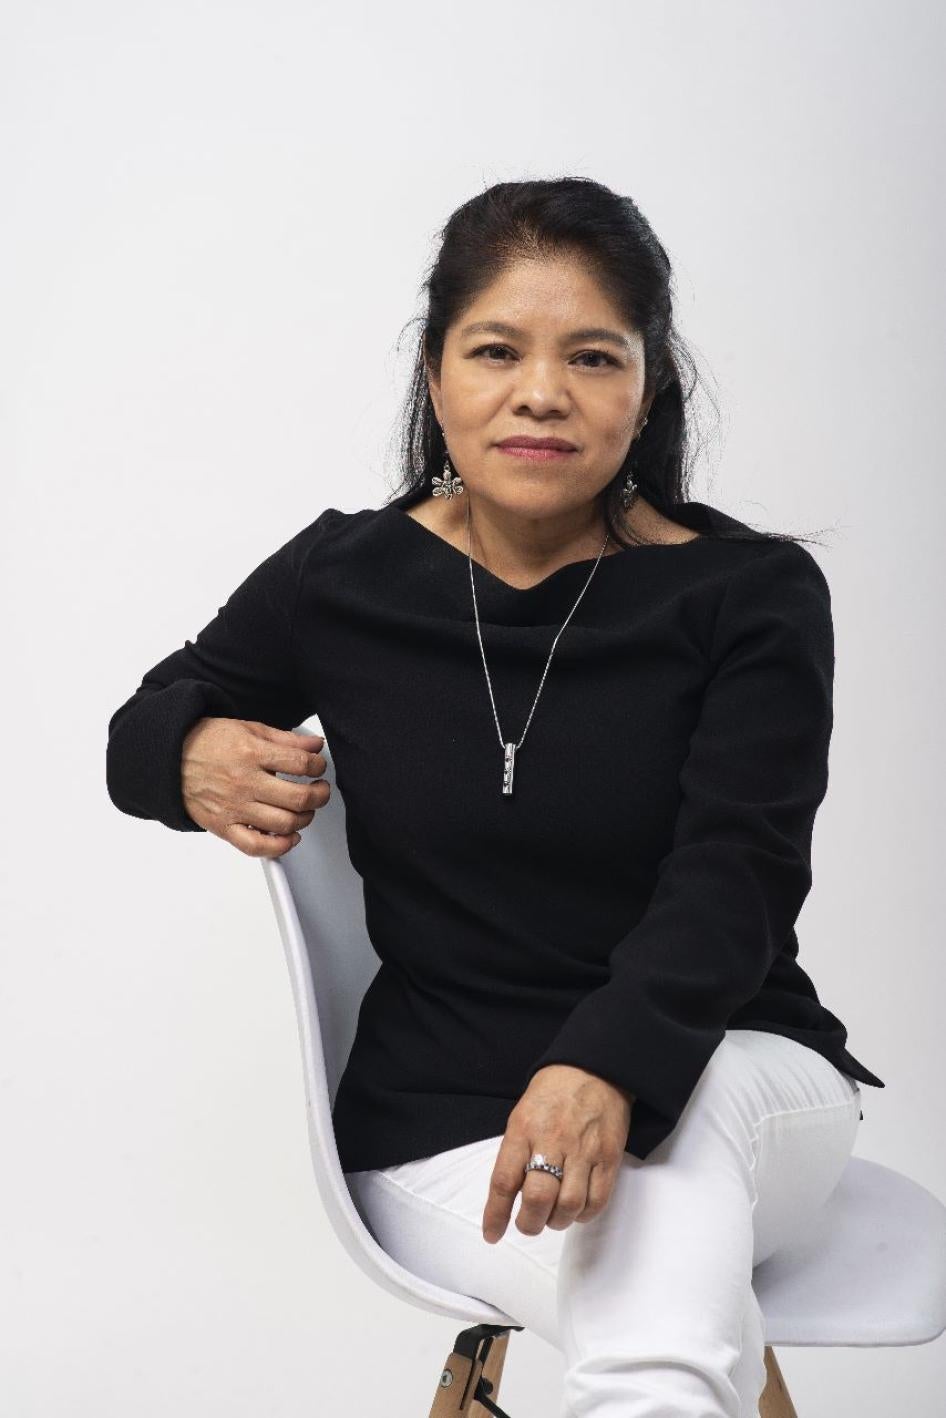 Marcelina Bautista, Centro de Apoyo y Capacitación para Empleadas del Hogar (CACEH), Mexico.